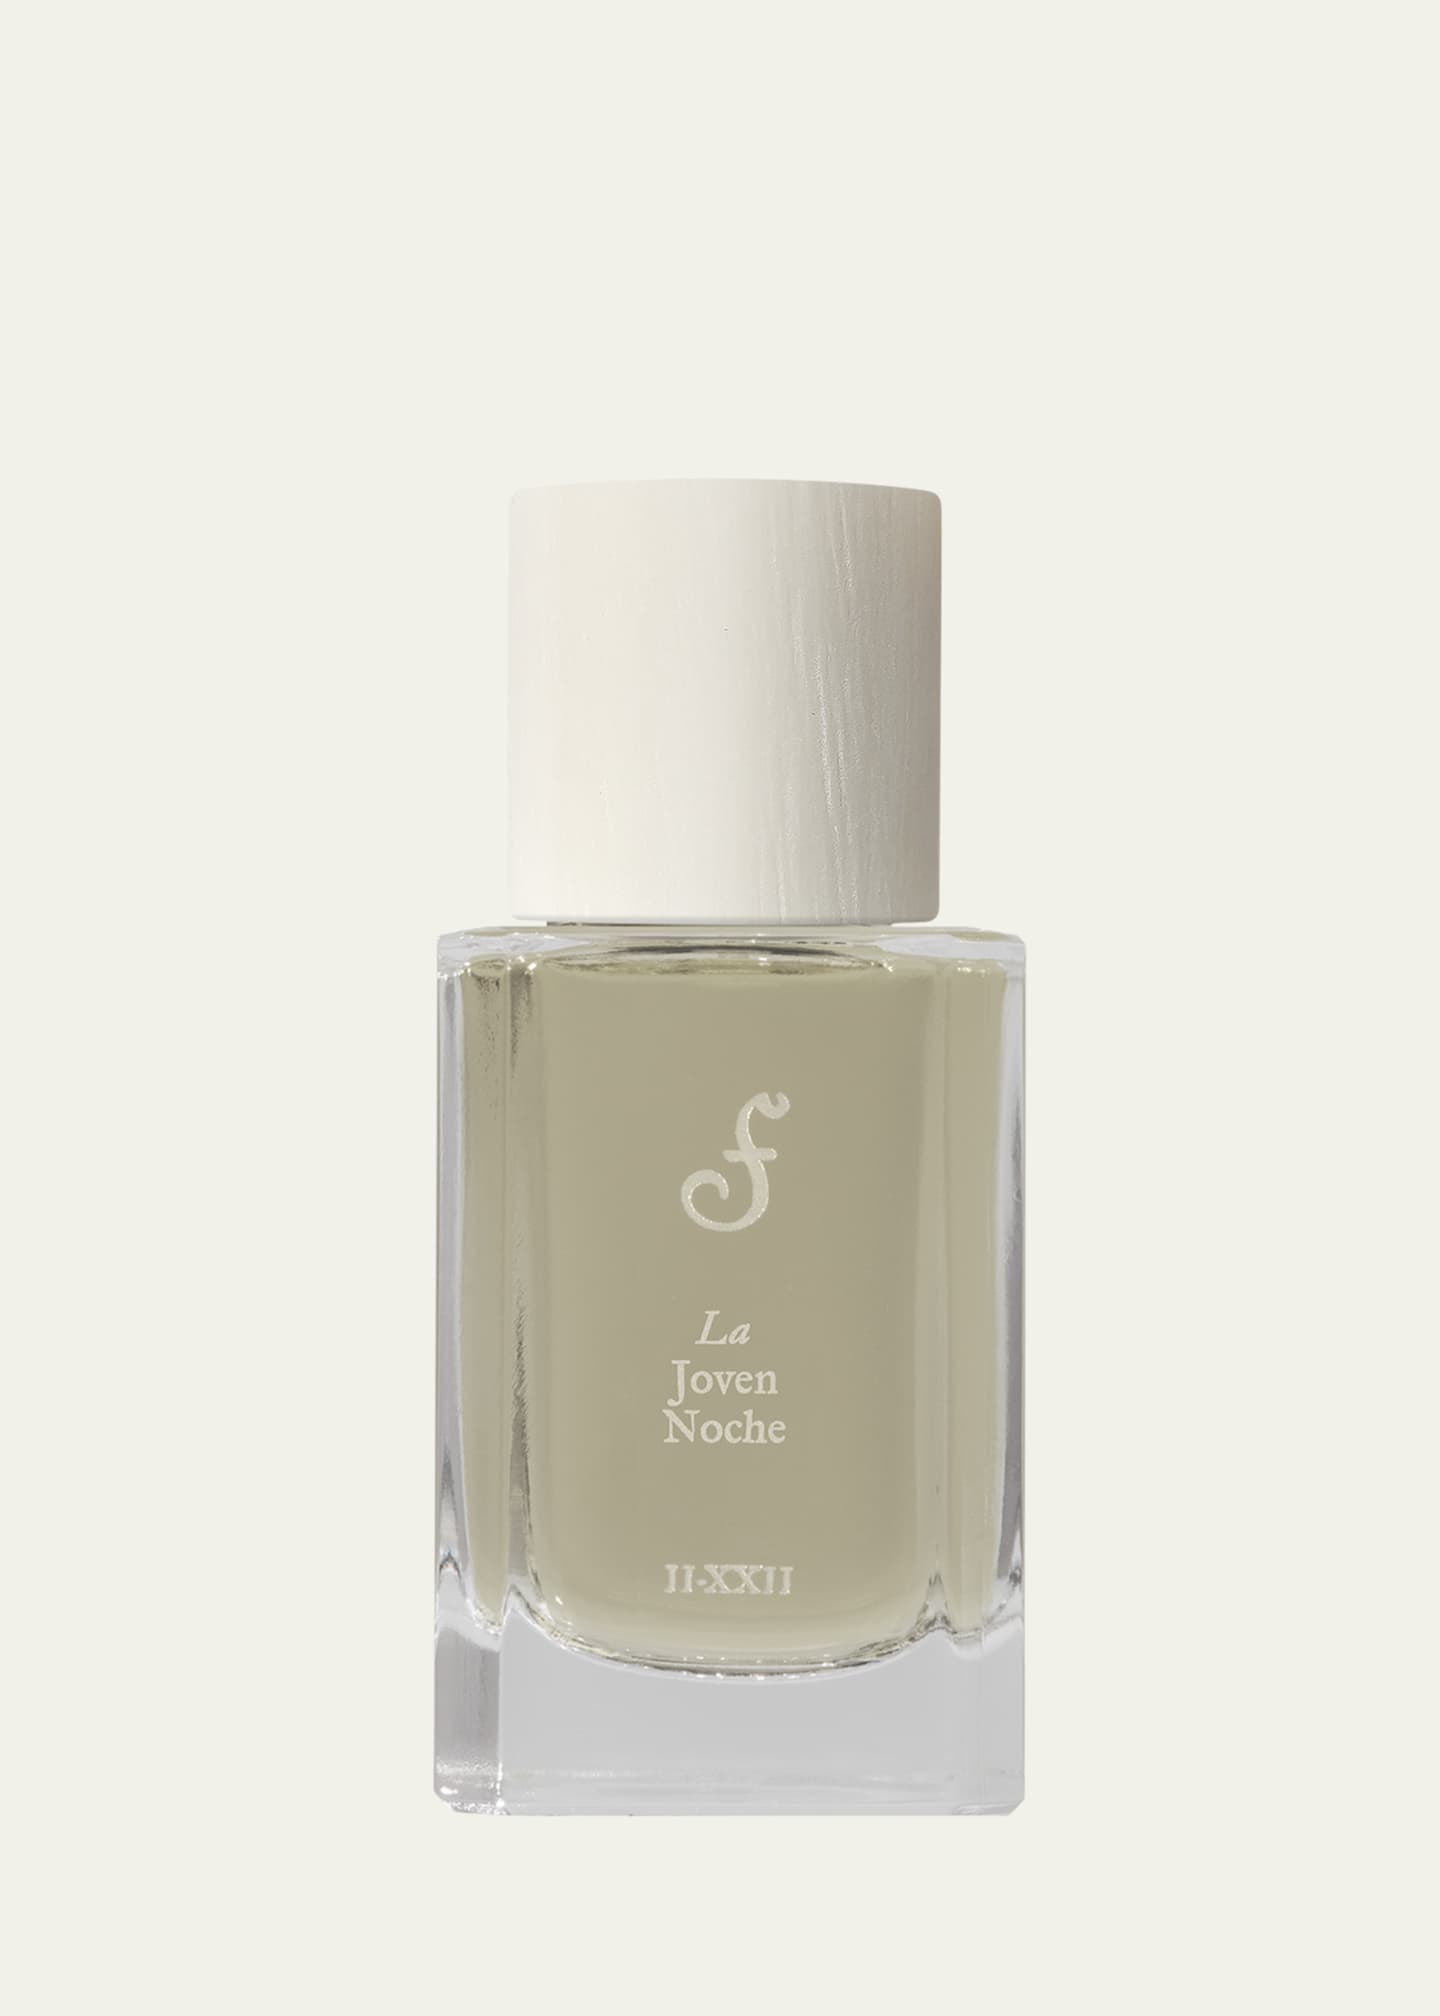 FUEGUIA 1833 1 oz. La Joven Noche Perfume - Bergdorf Goodman